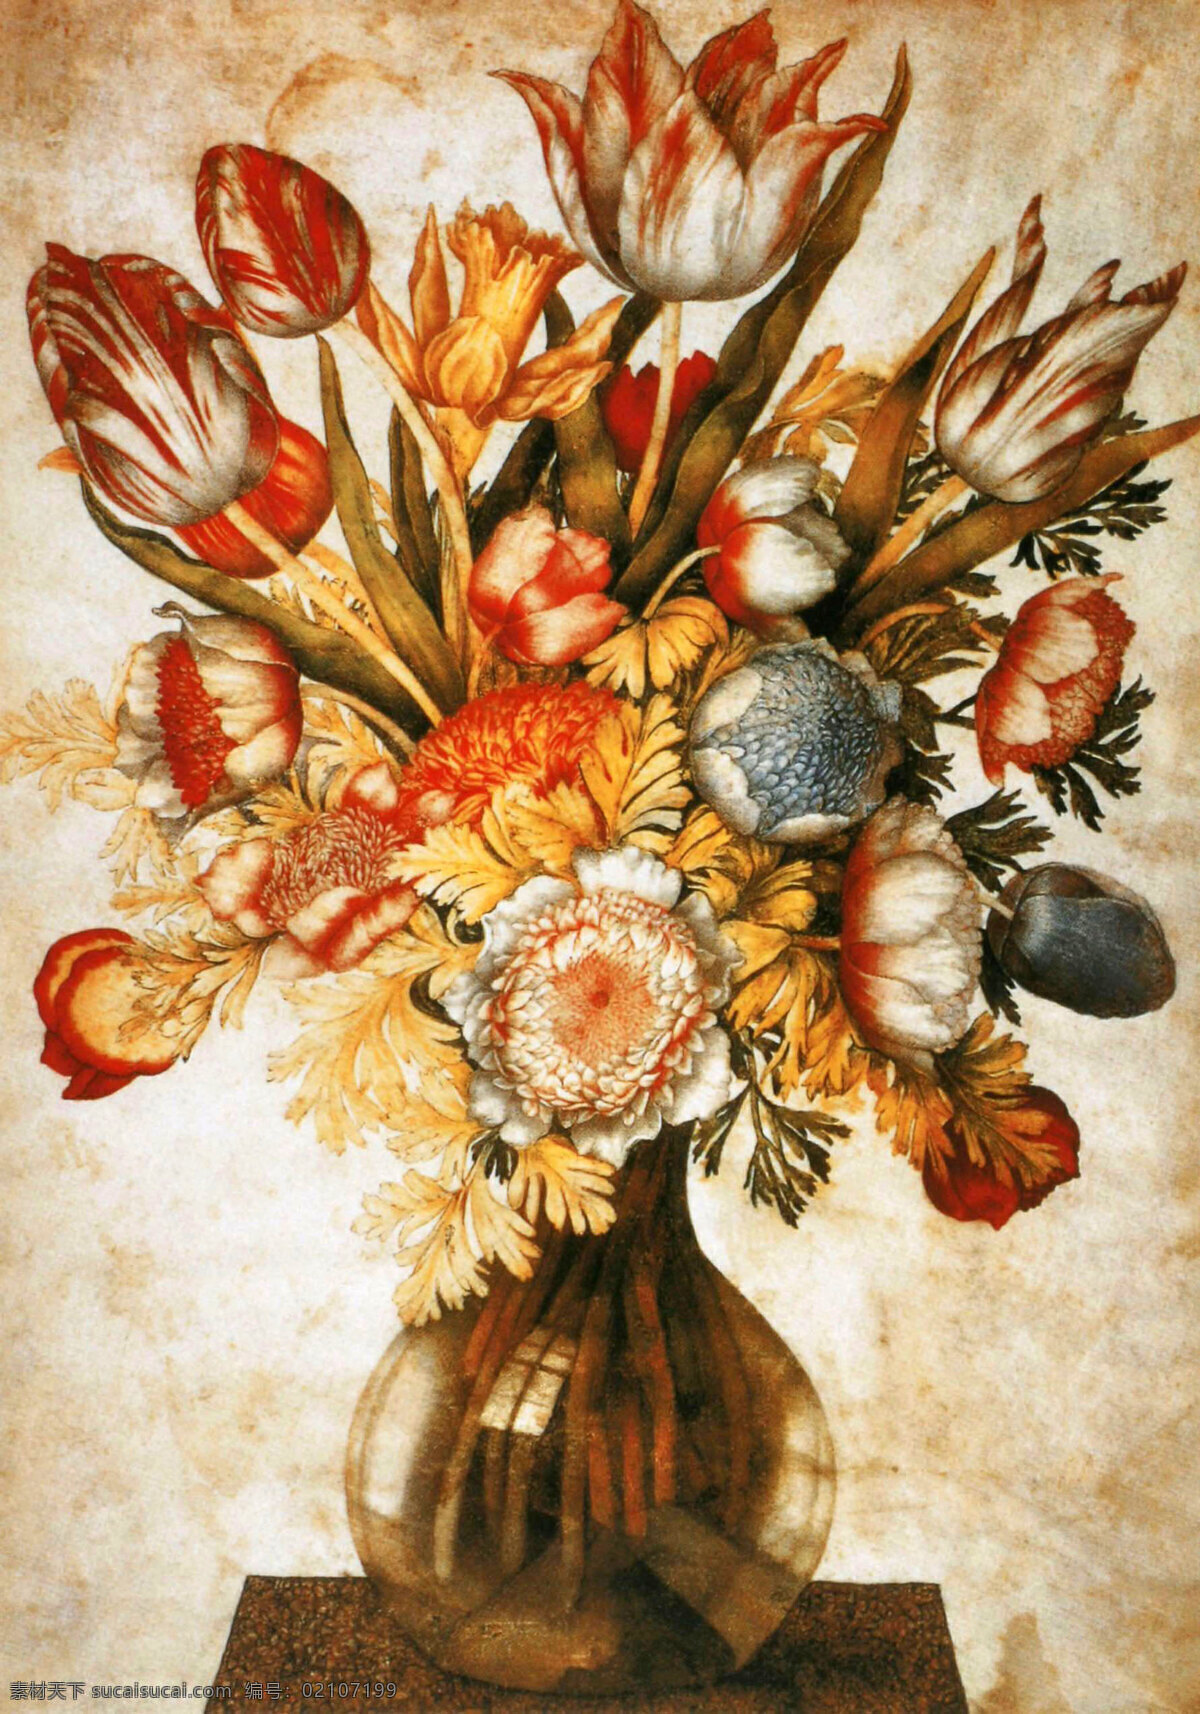 鲜花 花瓶 静物 油画 写生 花朵 绘画 艺术 水墨 花草 画 水墨画 风景 其他艺术 文化艺术 白色